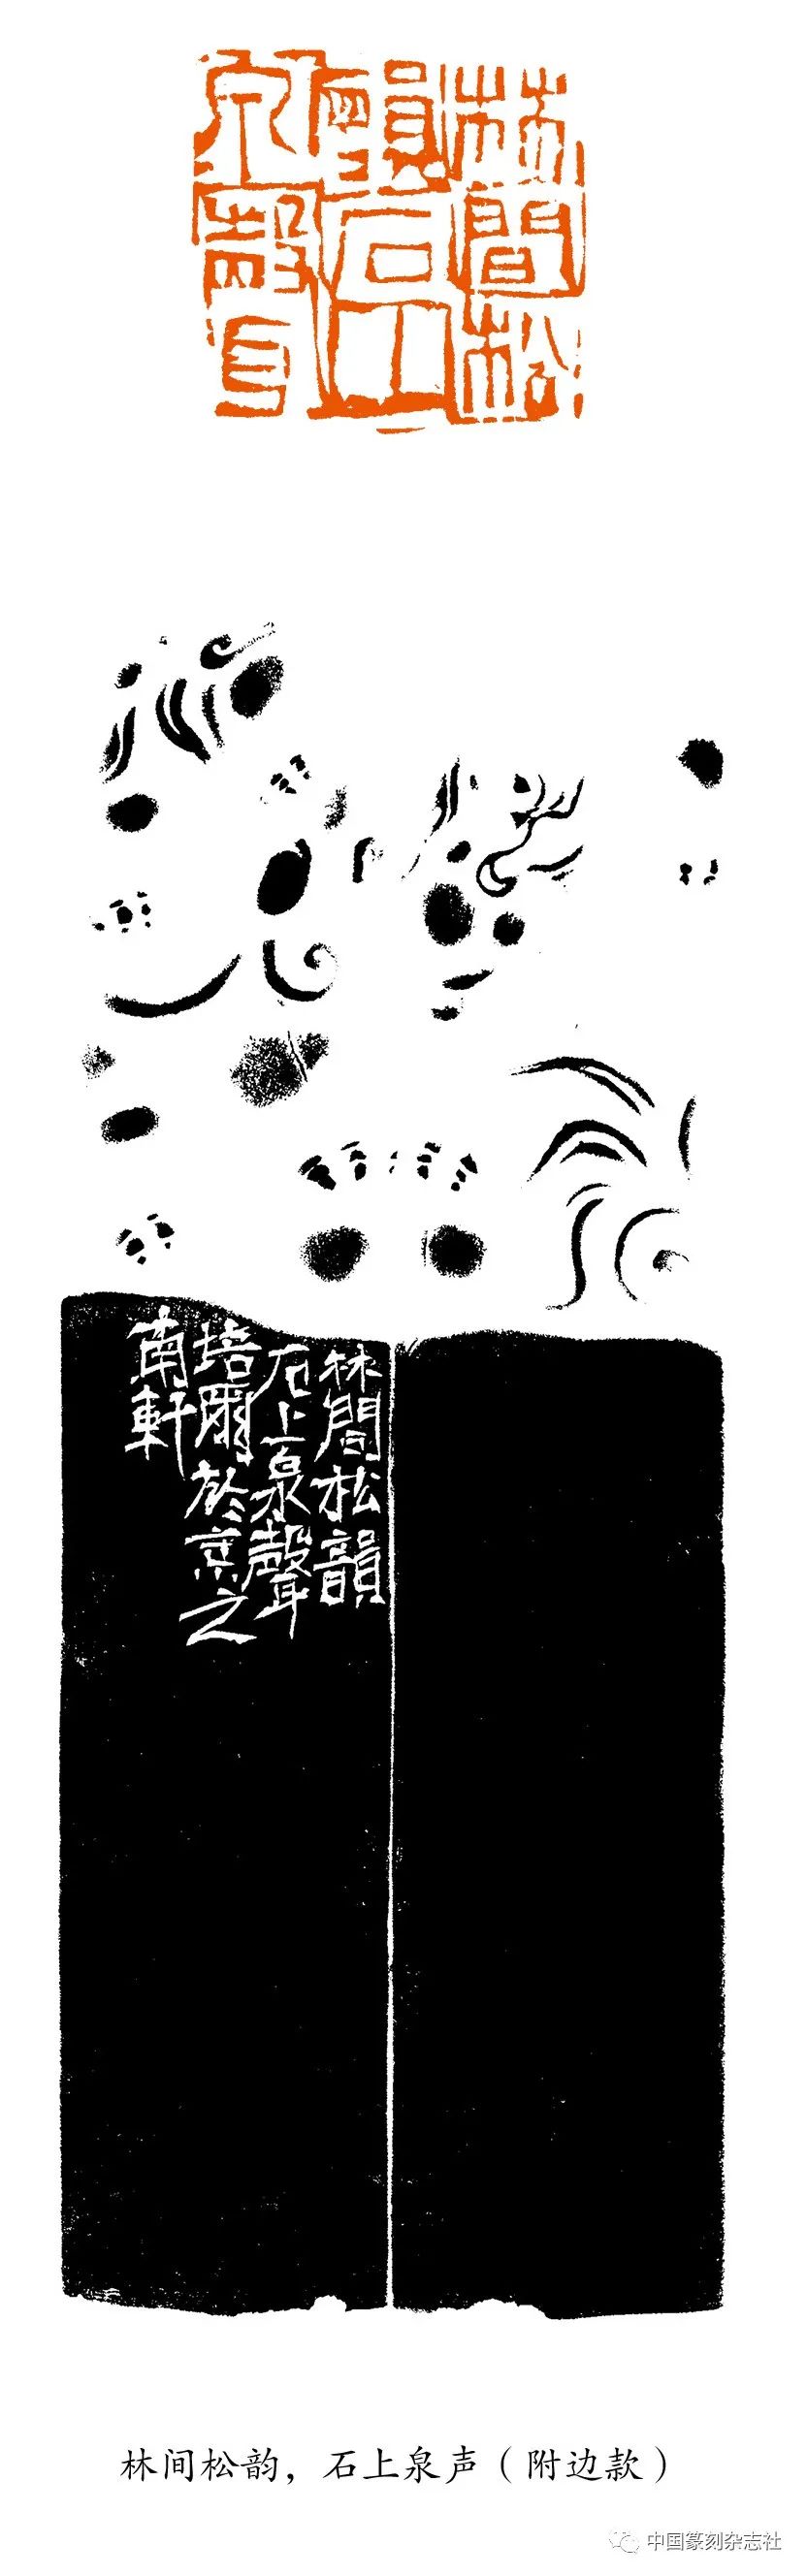 著名篆刻家朱培尔印章之妙趣（一）：随机偶得  灵性迸发